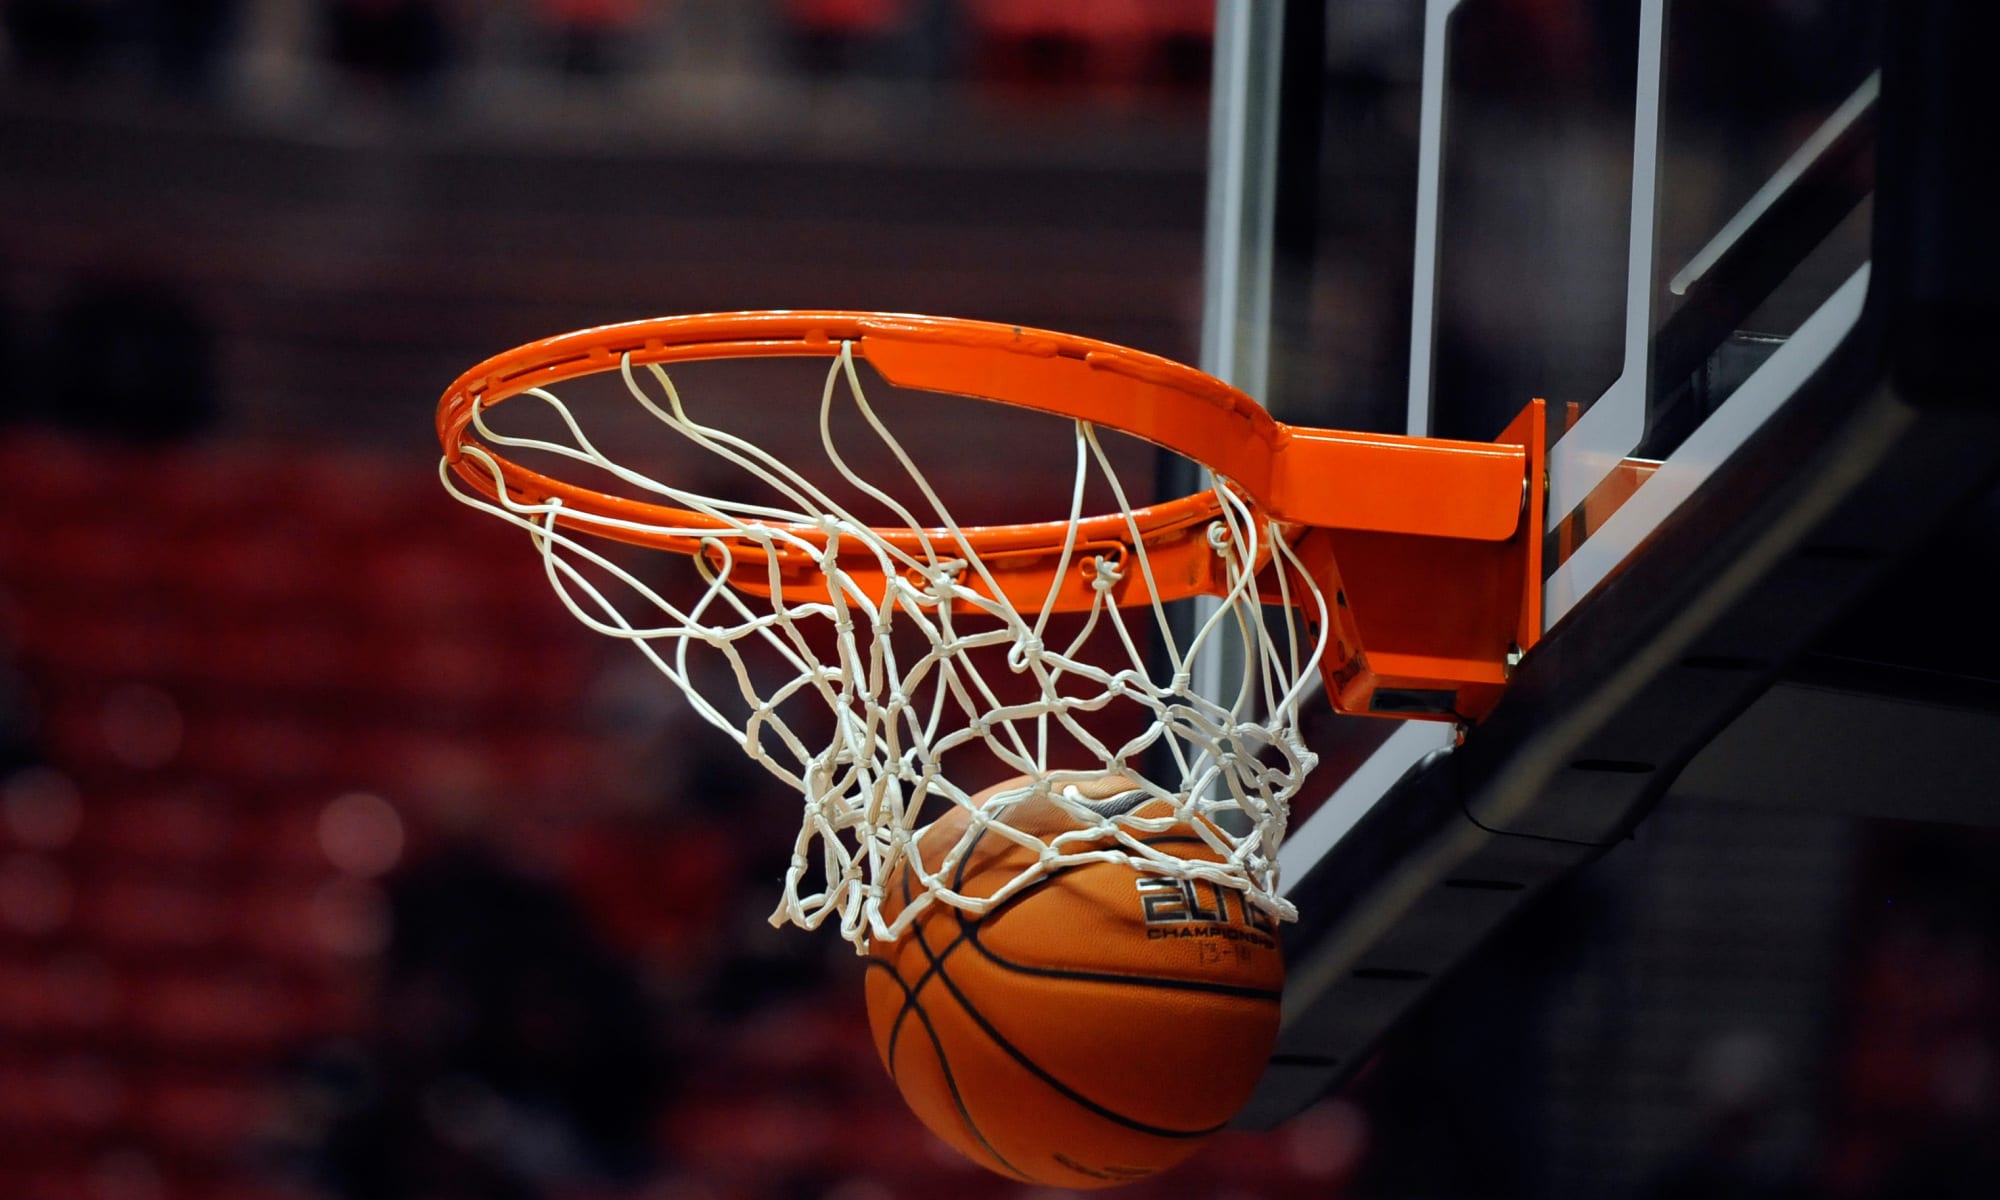 بطولة كرة السلة (مرحلة التتويج): برنامج مباريات الجولة الافتتاحية